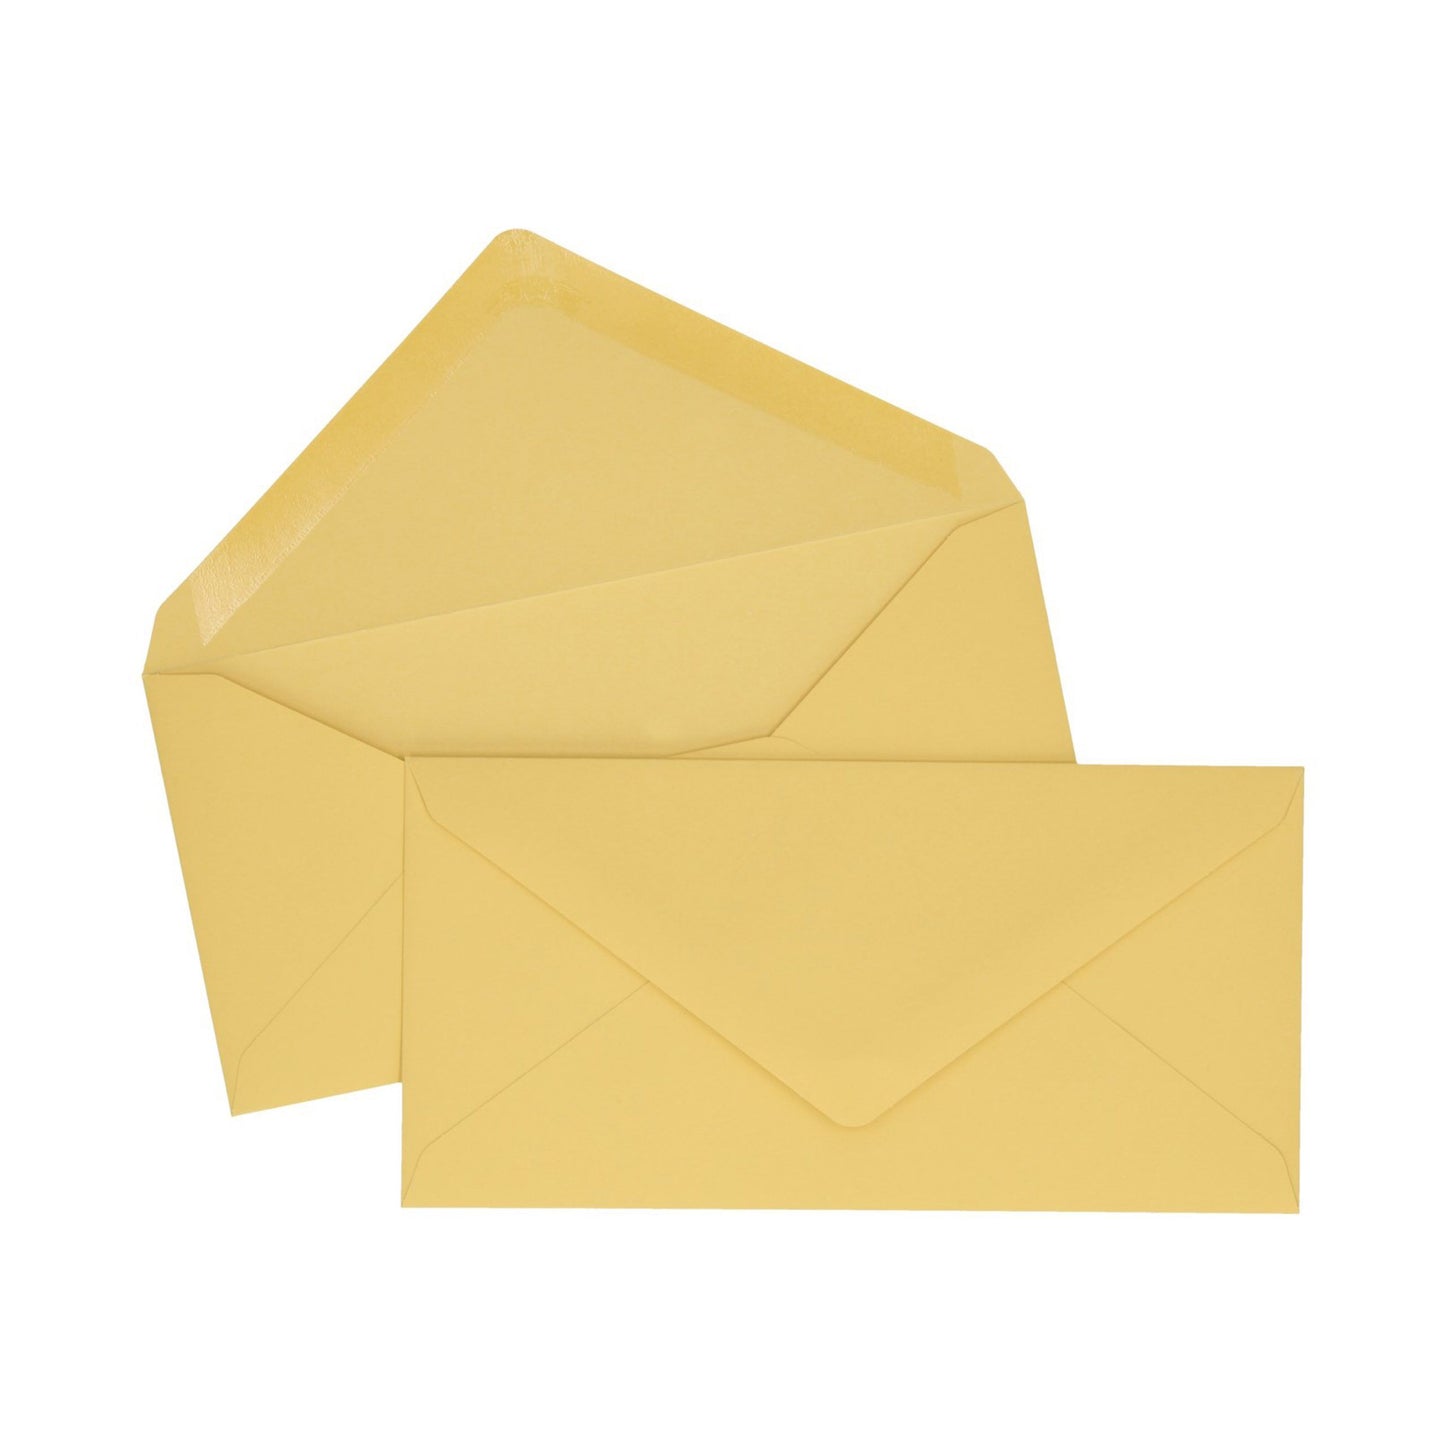 Mustard Yellow DL Envelope - 10 units